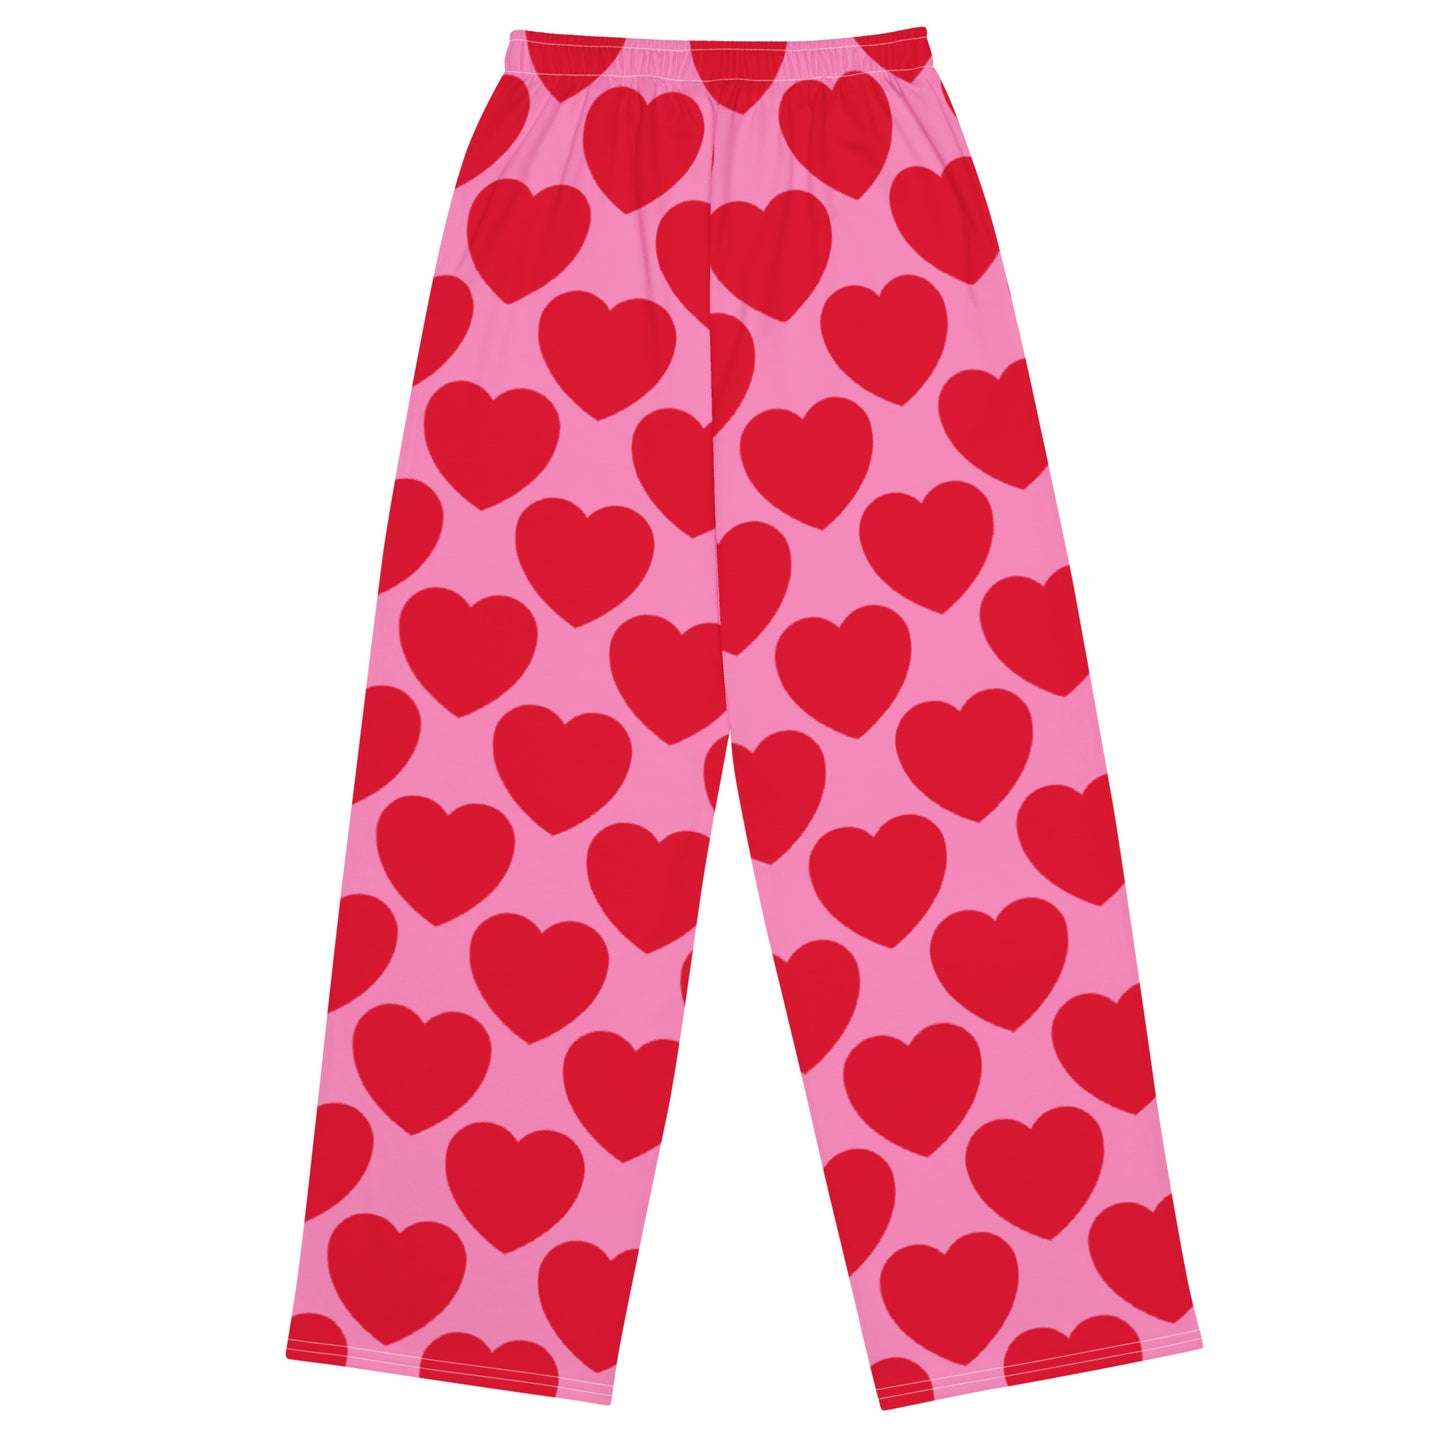 ELLIE LOVE red - Unisex wide-leg pants